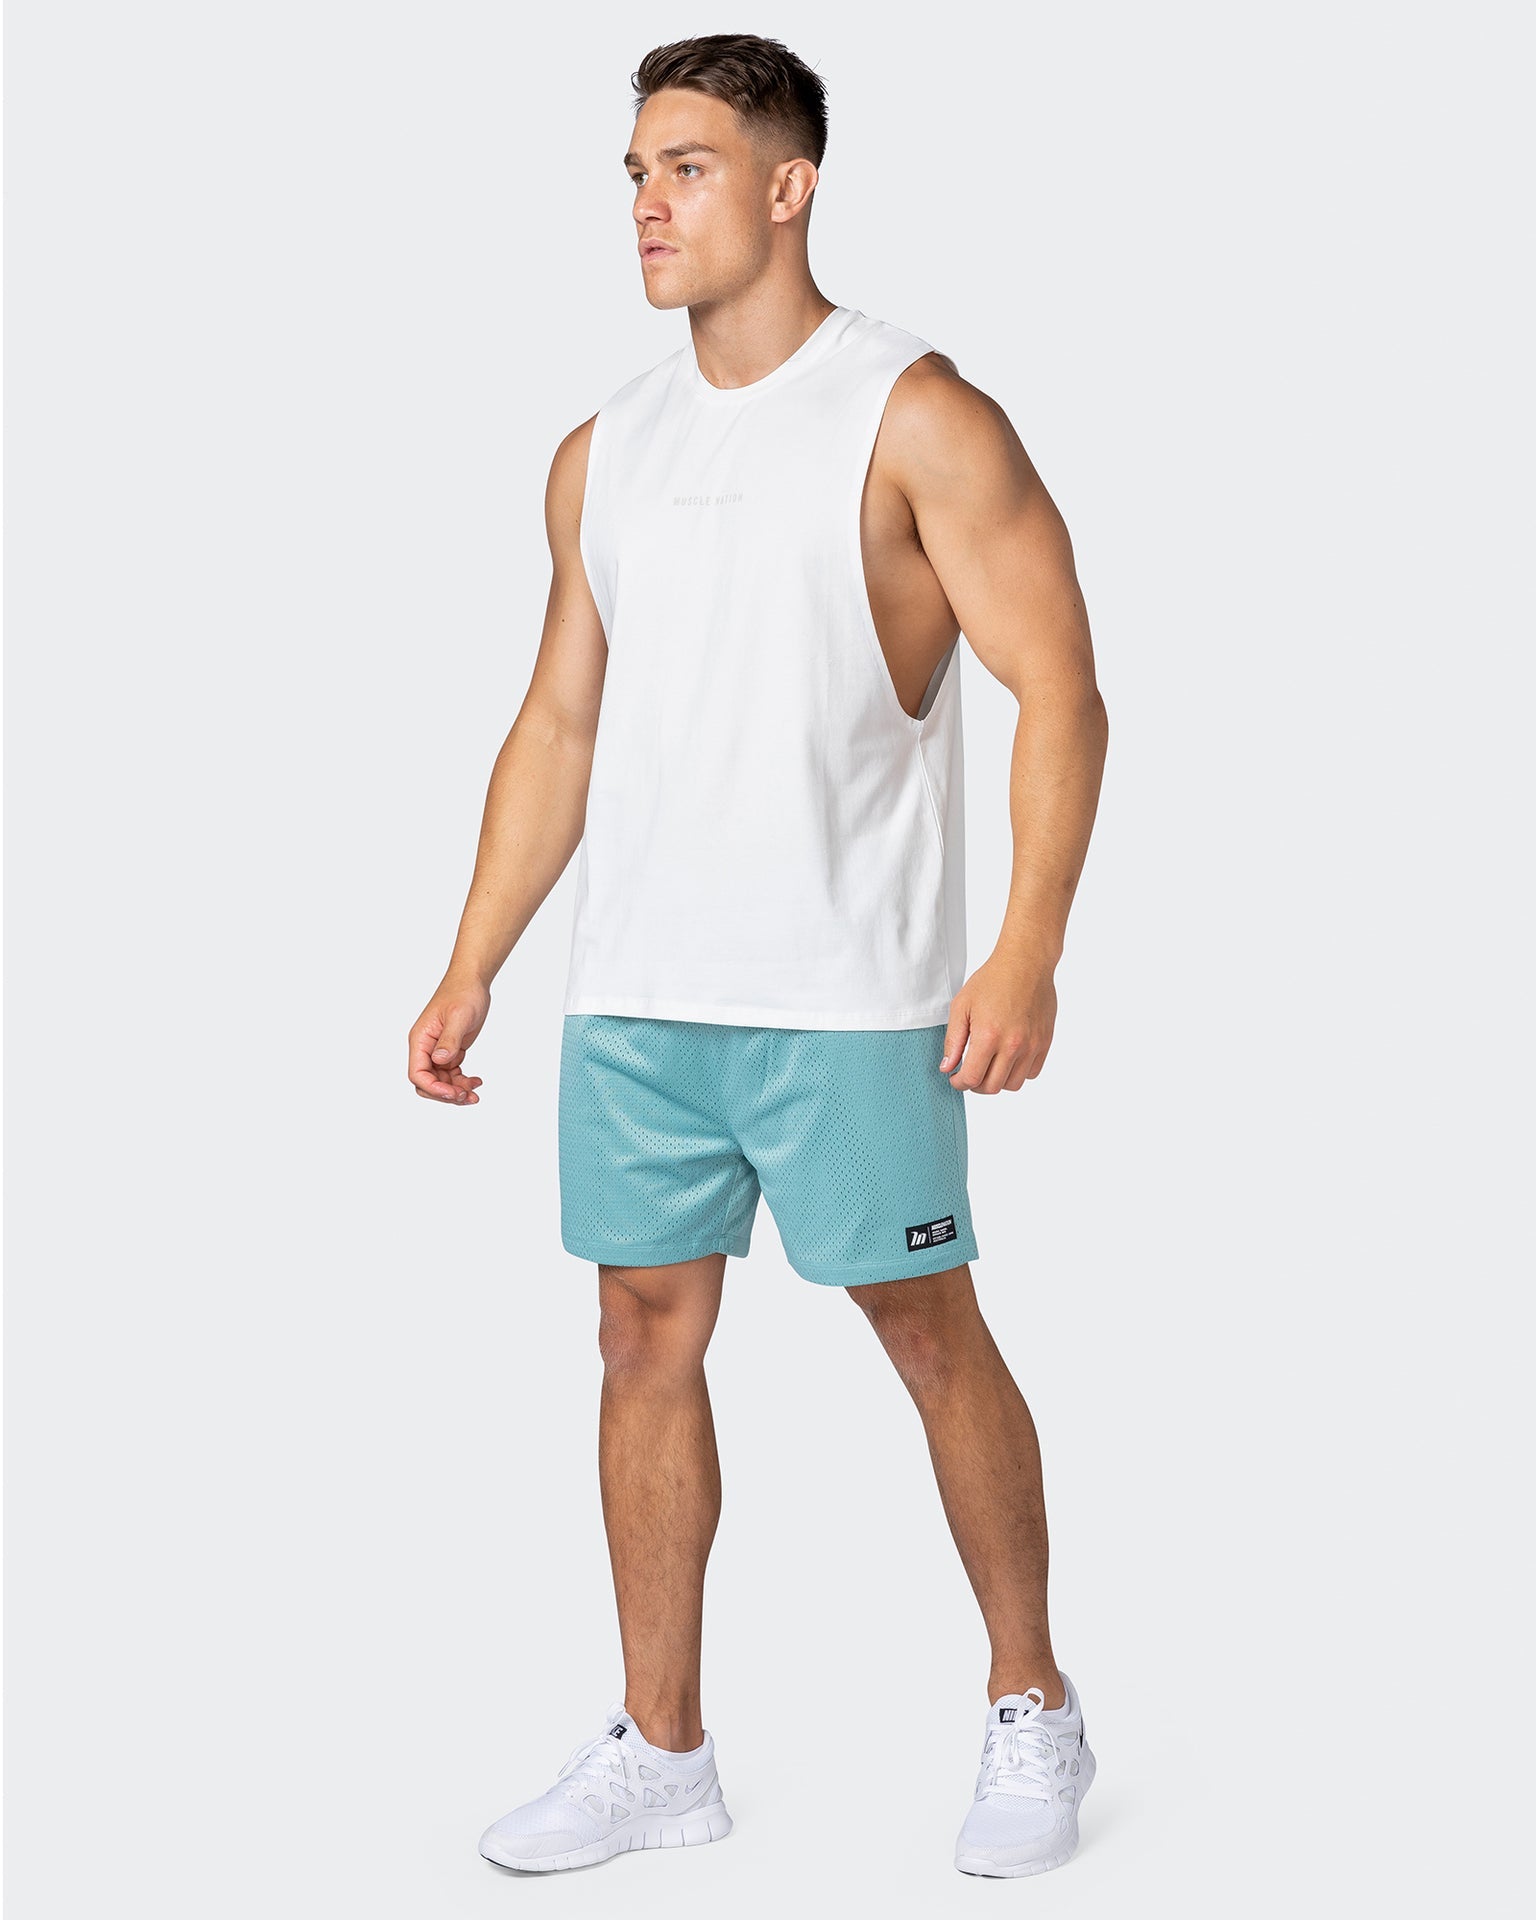 musclenation Shorts Lay Up Shorts - Dusty Jade